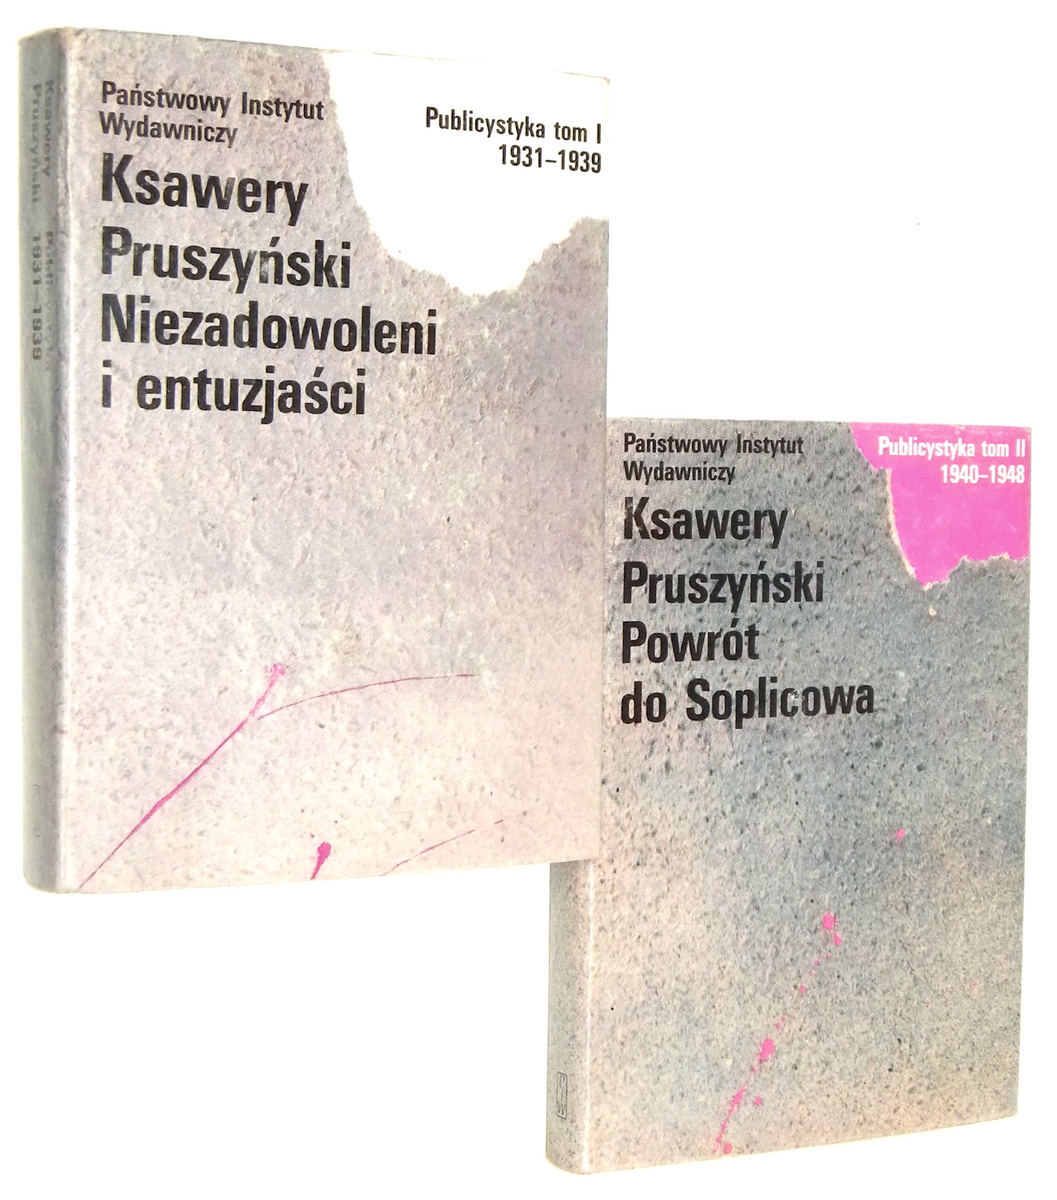 PUBLICYSTYKA 1931-1948 [1-2] Niezadowoleni i entuzjaci * Powrt do Soplicowa - Pruszyski, Ksawery